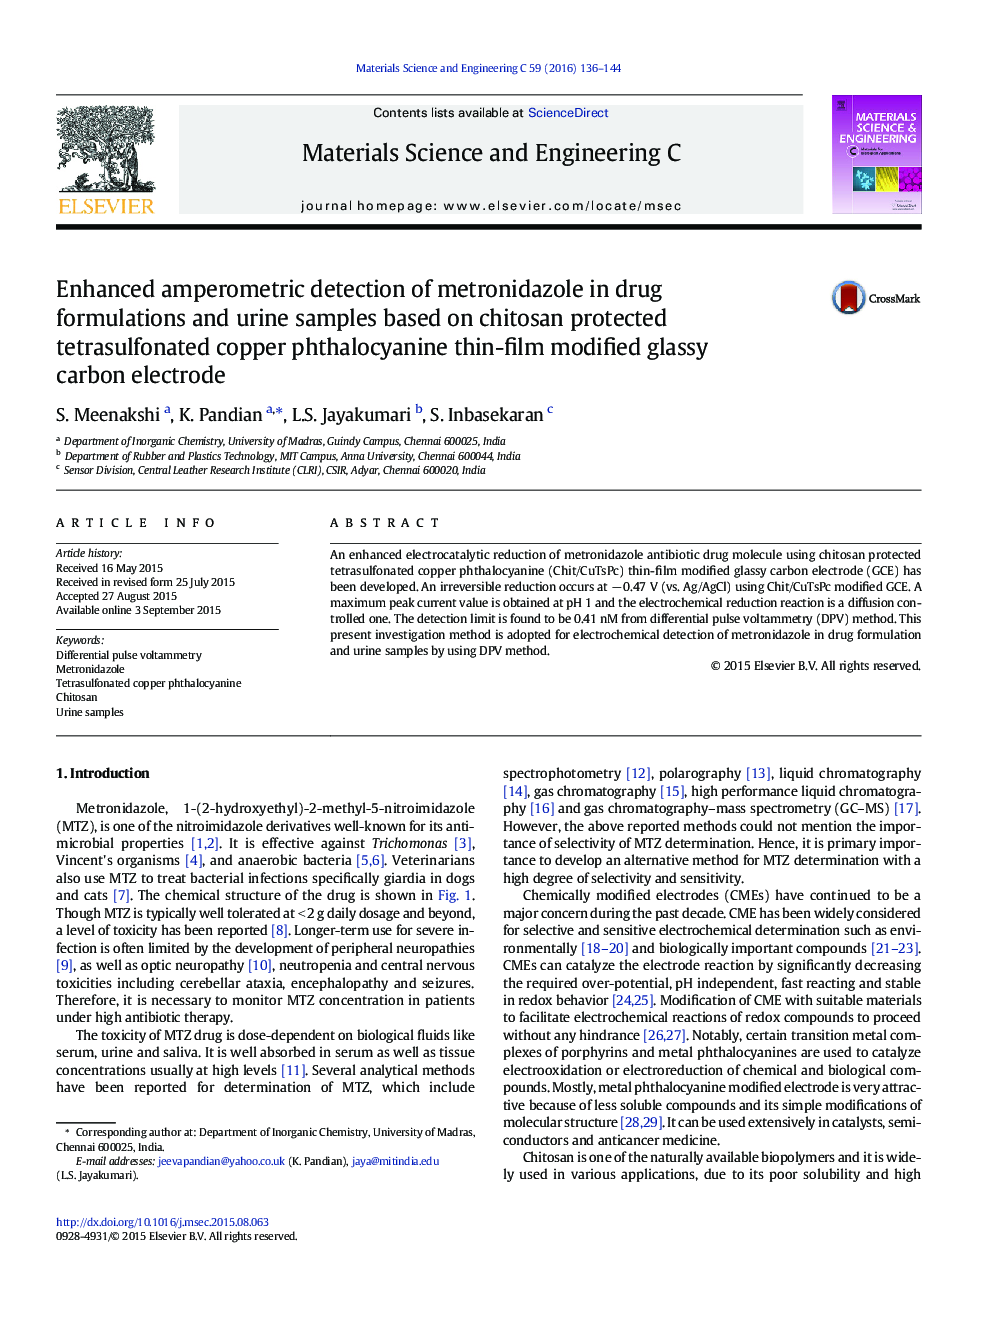 تشخیص آمپرورتریک پیشرفته مترونیدازول در فرمولاسیون دارو و نمونه های ادرار بر اساس کیتوزان محافظت شده تترازولفونیک فتالوسیانین مس، الکترودهای کربن شیشه ای نازک محافظ 